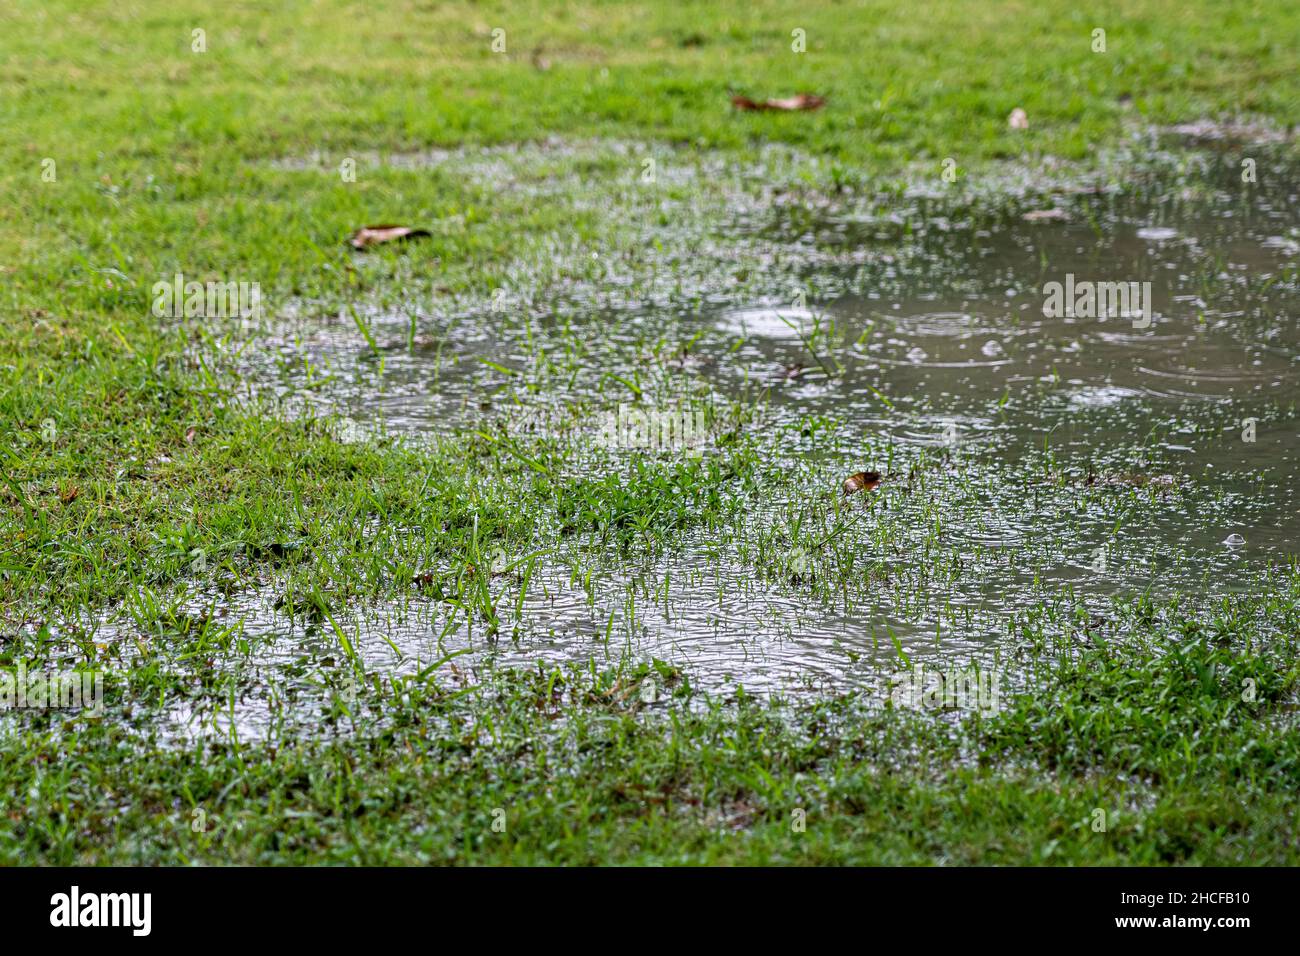 Pudle auf dem Rasen durch den Regensturm verursacht. Nahaufnahmen von Regentropfen, die auf Wasser fallen, und trockenen Blättern. Stockfoto